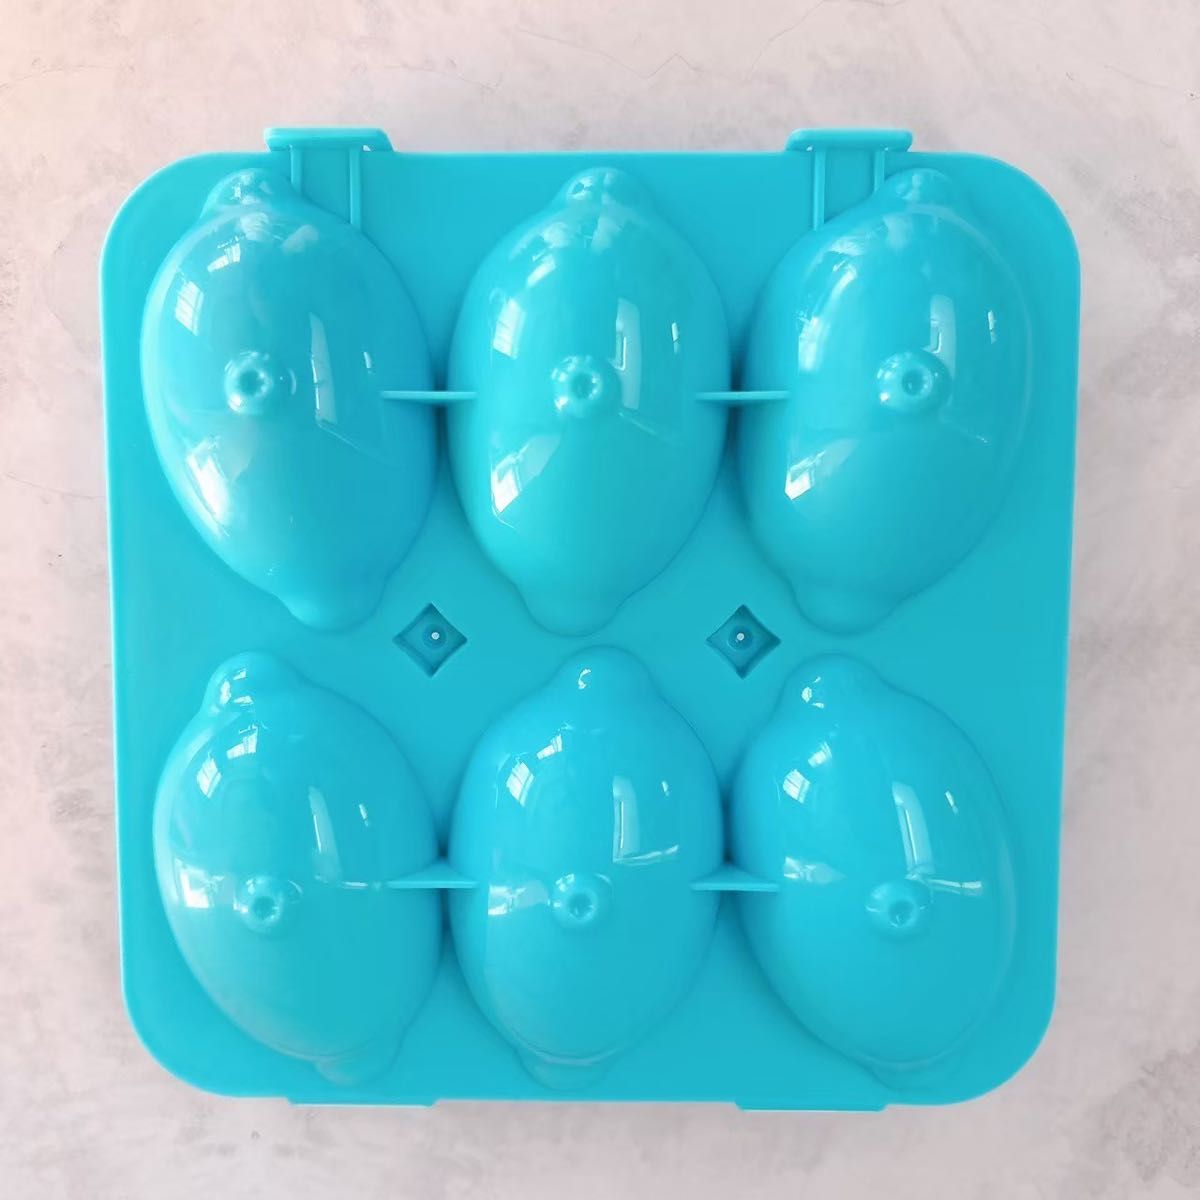 マッチングエッグ シェイプパズル 卵 おもちゃ 知育玩具 型はめ 早期教育 3D